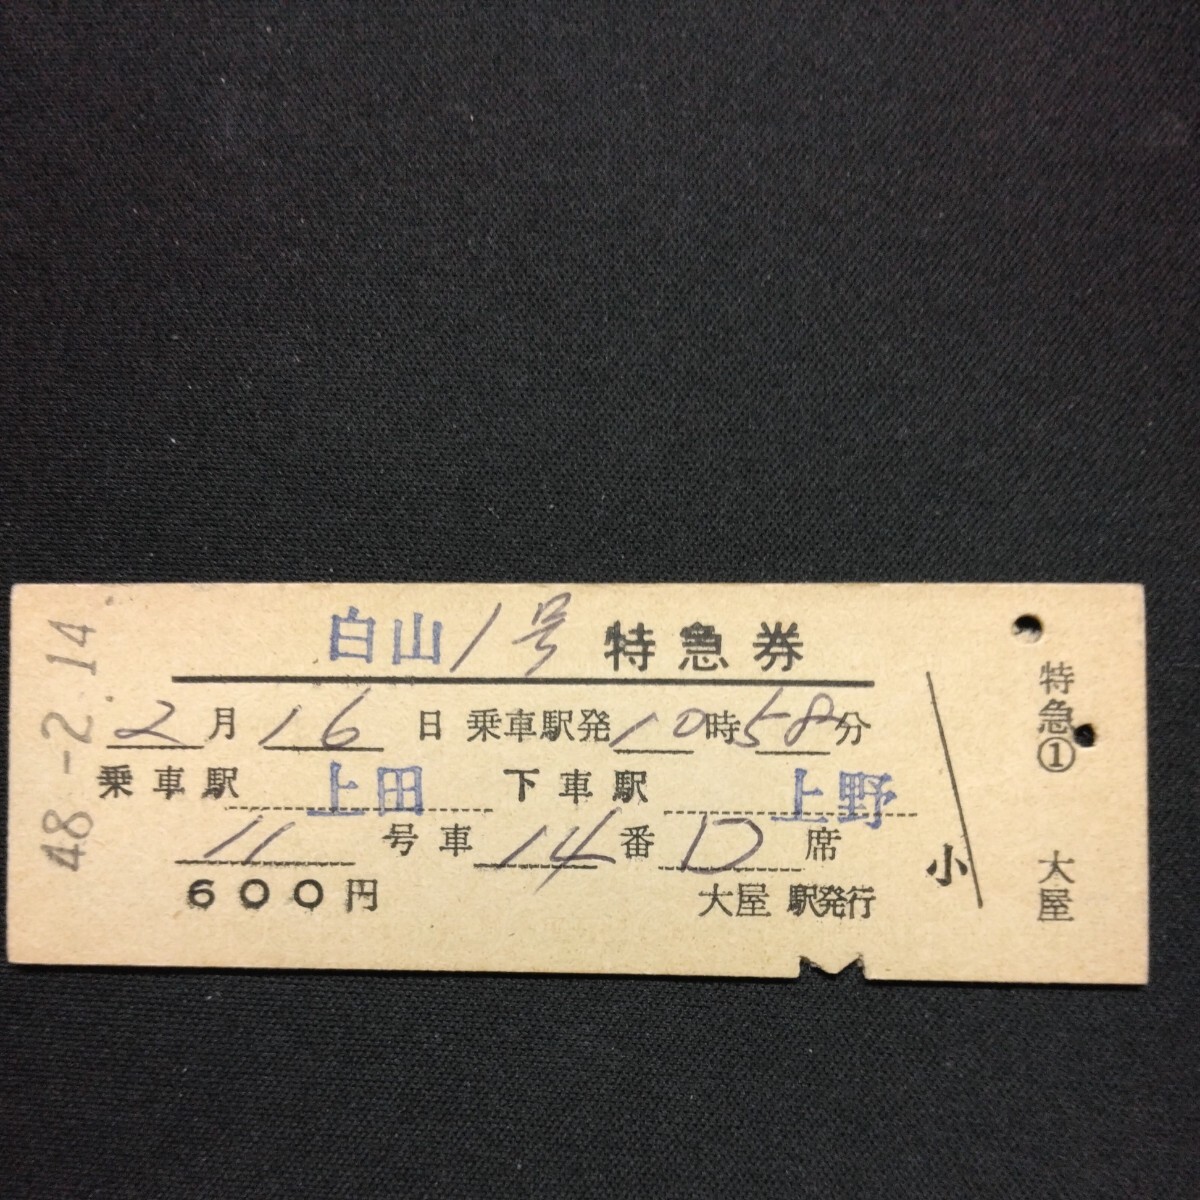 【04681】白山1号 特急券 上田→上野 D型 乗車券 硬券 国鉄 古い切符の画像1